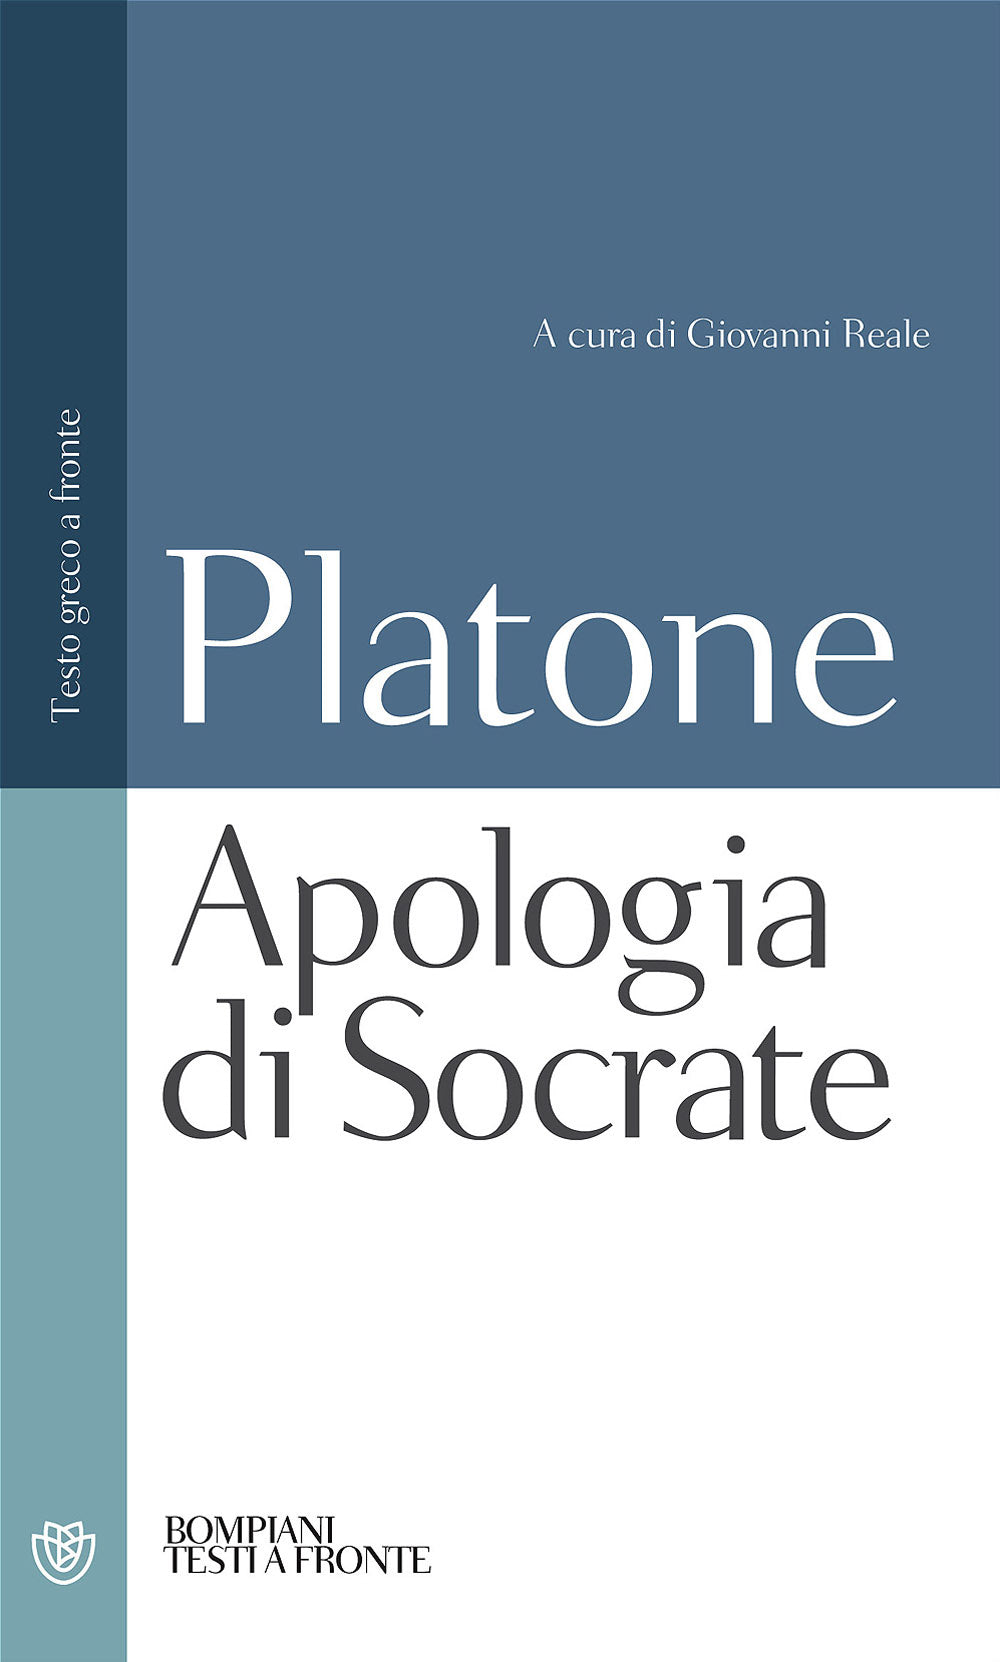 Apologia di Socrate, Platone